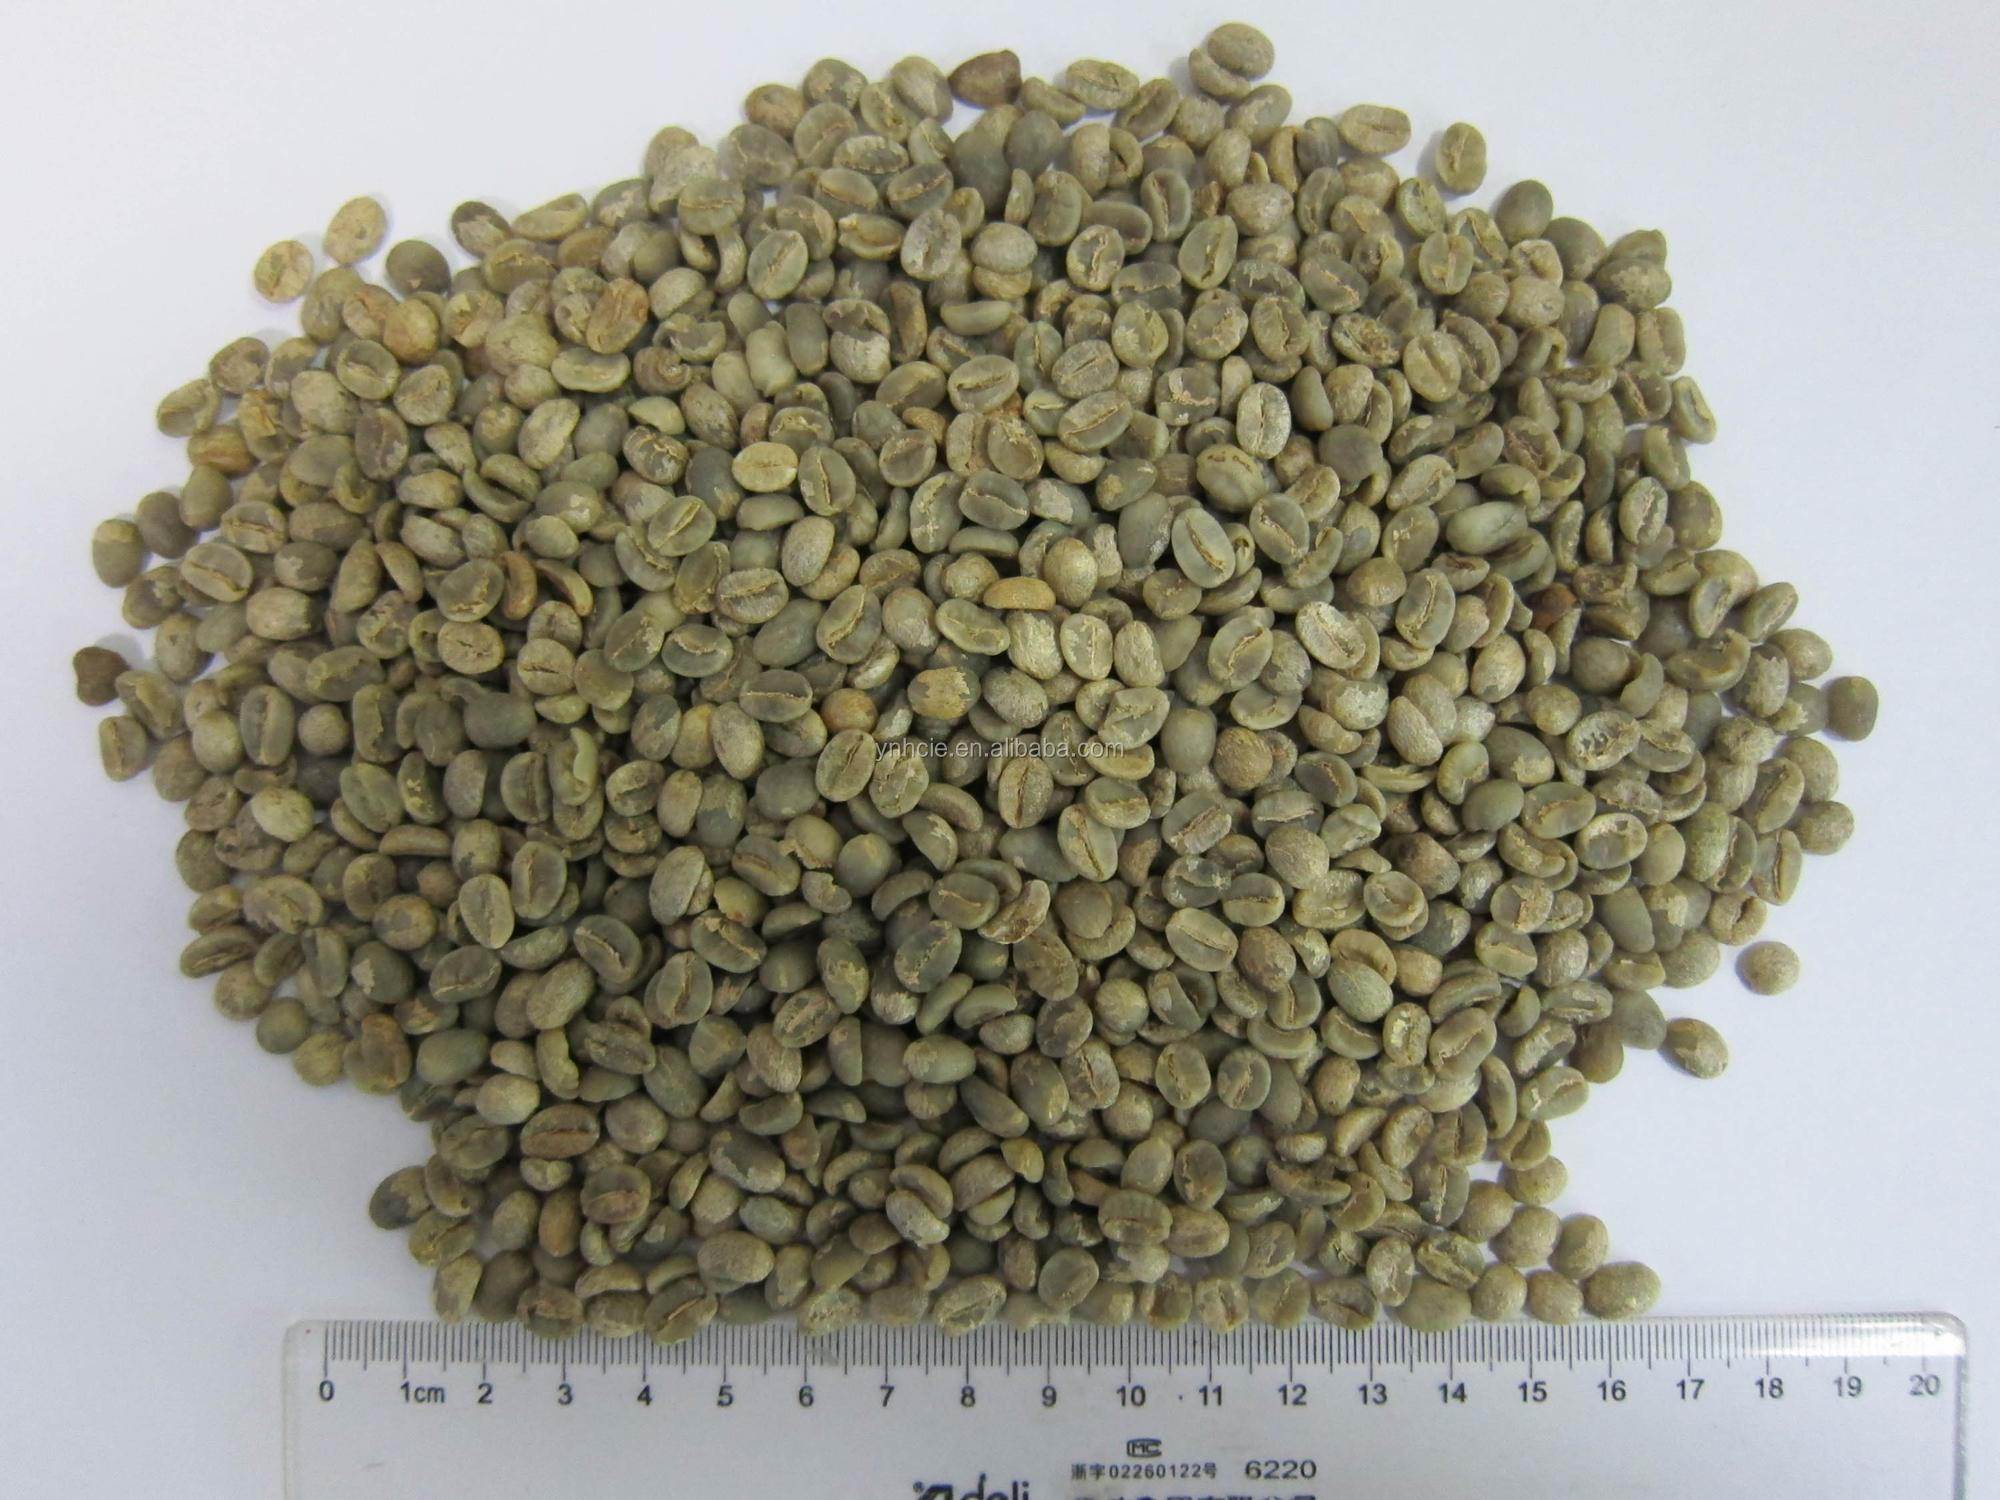 中国雲南アラビカ洗浄グリーンコーヒー豆、グレードA、画面15-16